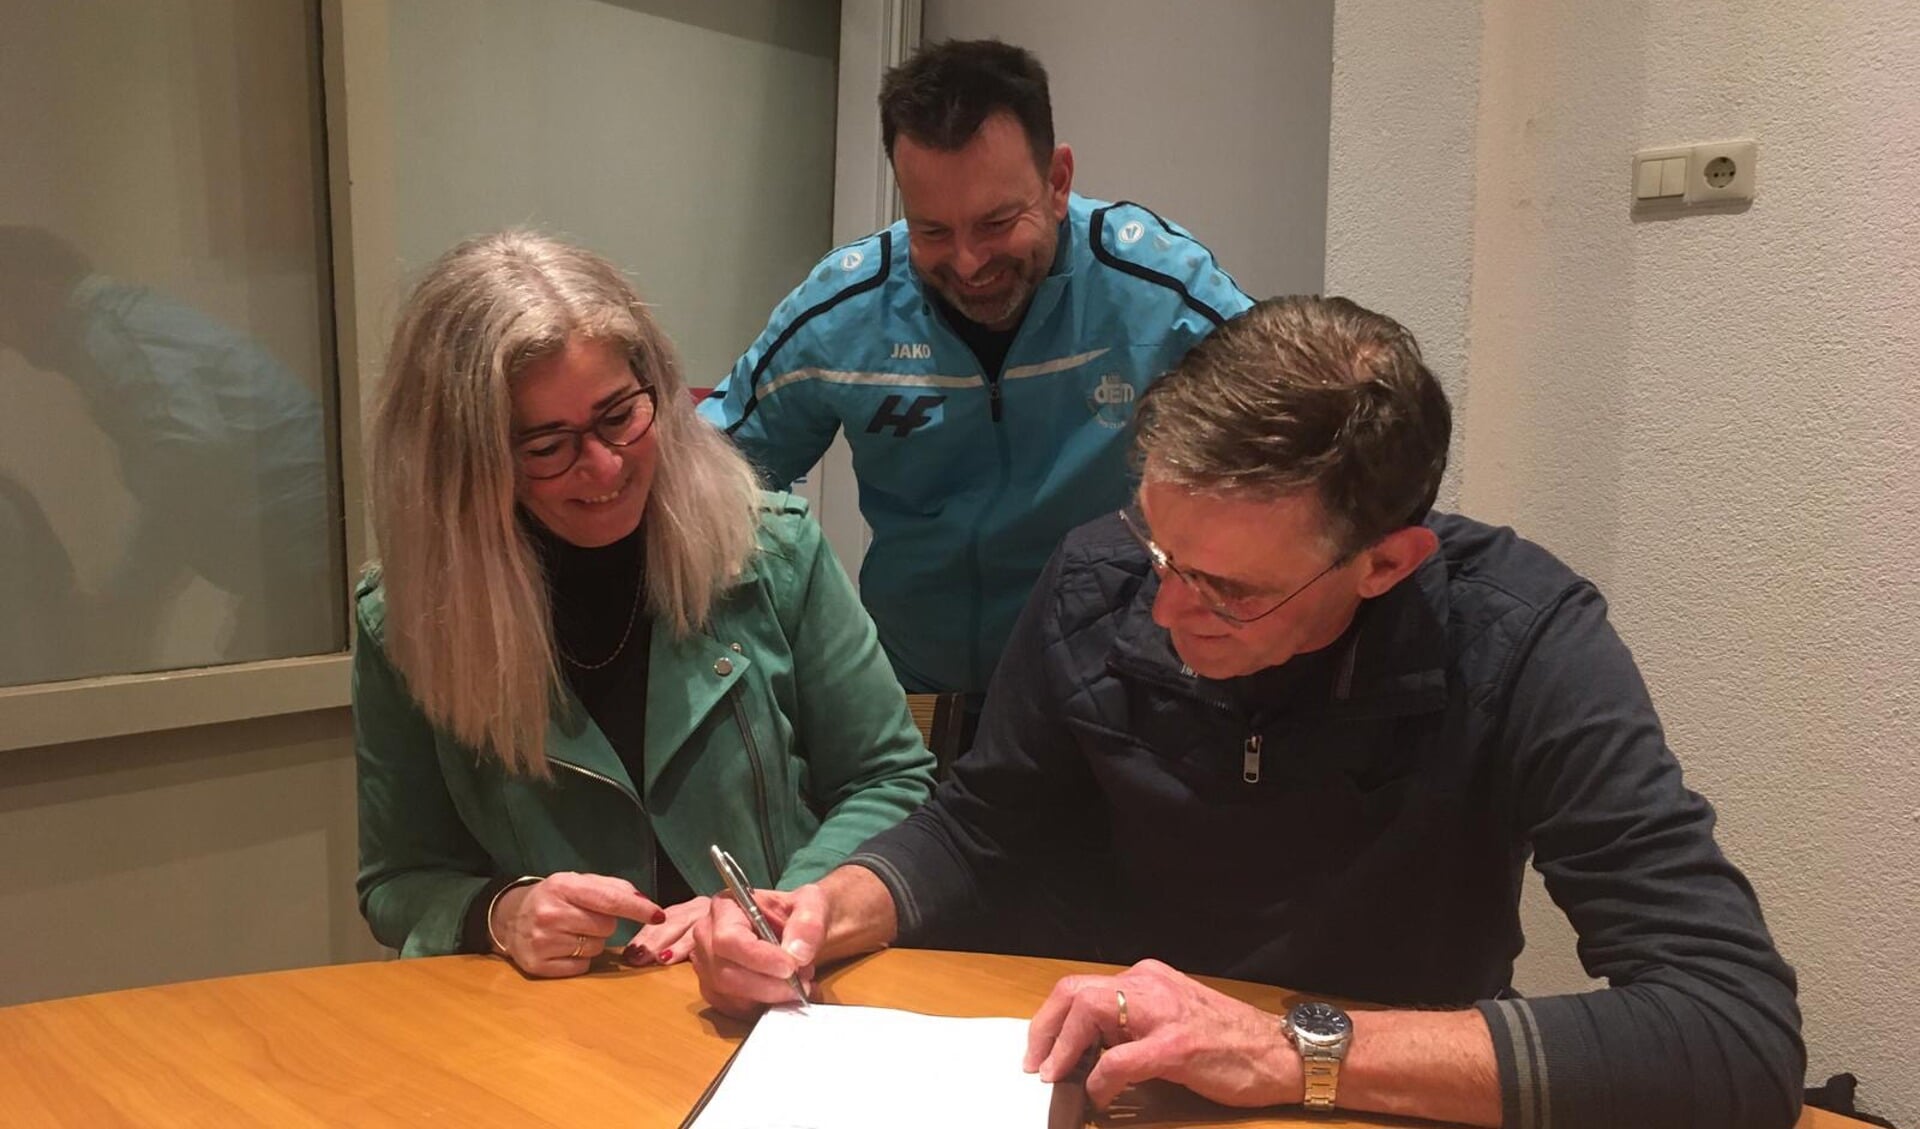 Voorzitter Karin Smit en penningmeester Jan van der Geest tekenen de overeenkomst onder toeziend oog van DEM-lid Bob Hofstede die betrokken was bij de voorbereidingen.